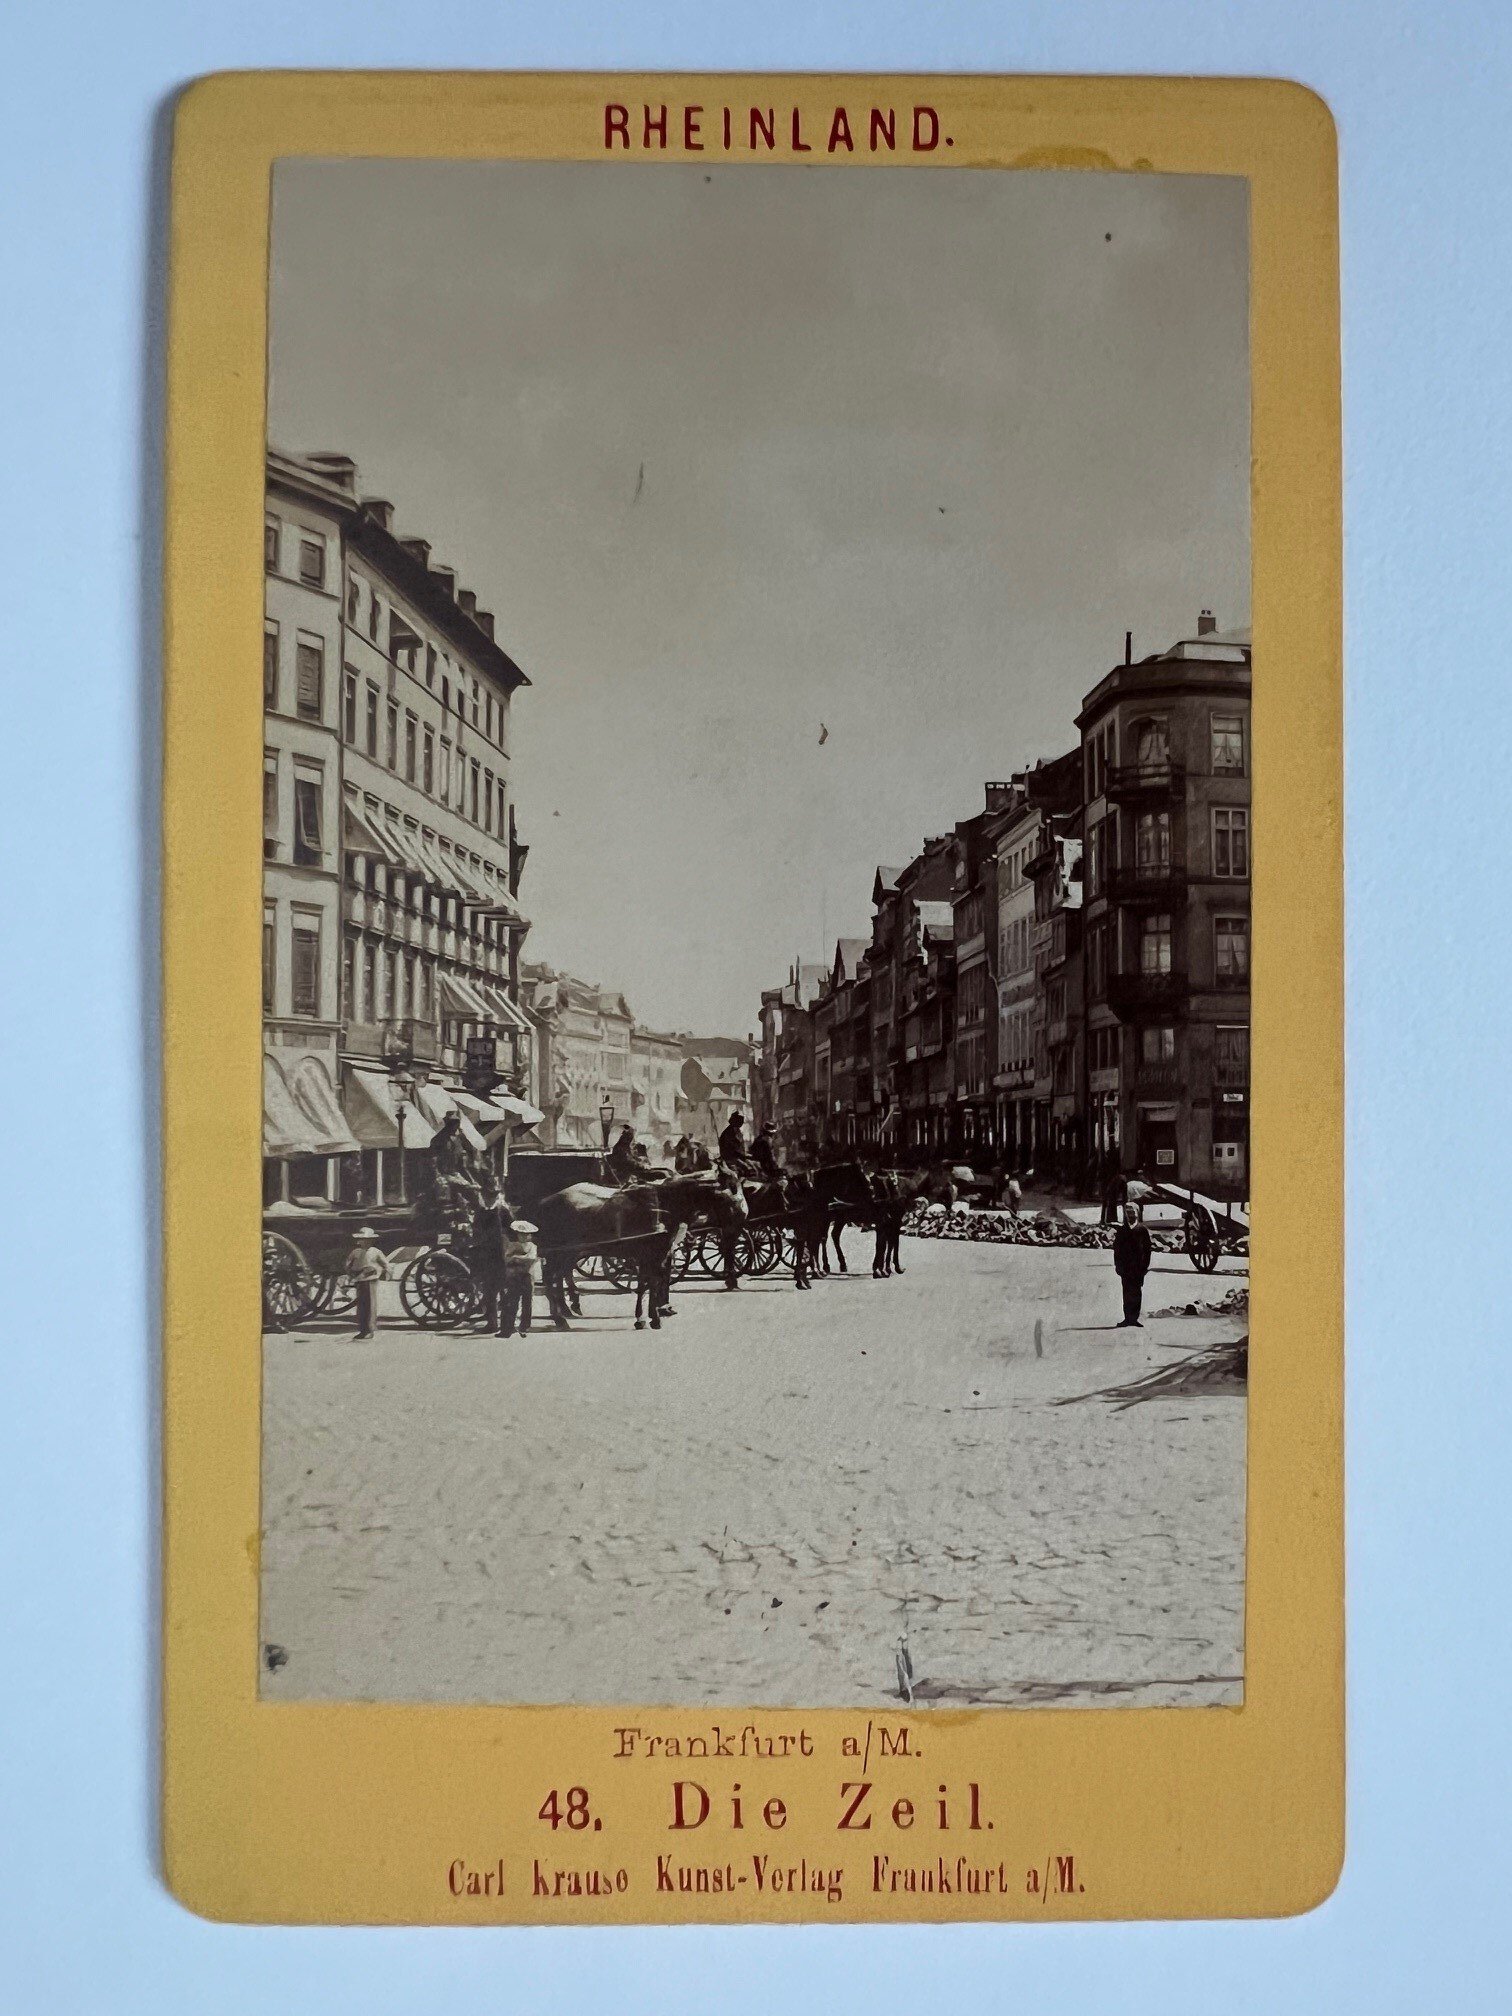 CdV, Unbekannter Fotograf, Frankfurt, Die Zeil, ca. 1881. (Taunus-Rhein-Main - Regionalgeschichtliche Sammlung Dr. Stefan Naas CC BY-NC-SA)